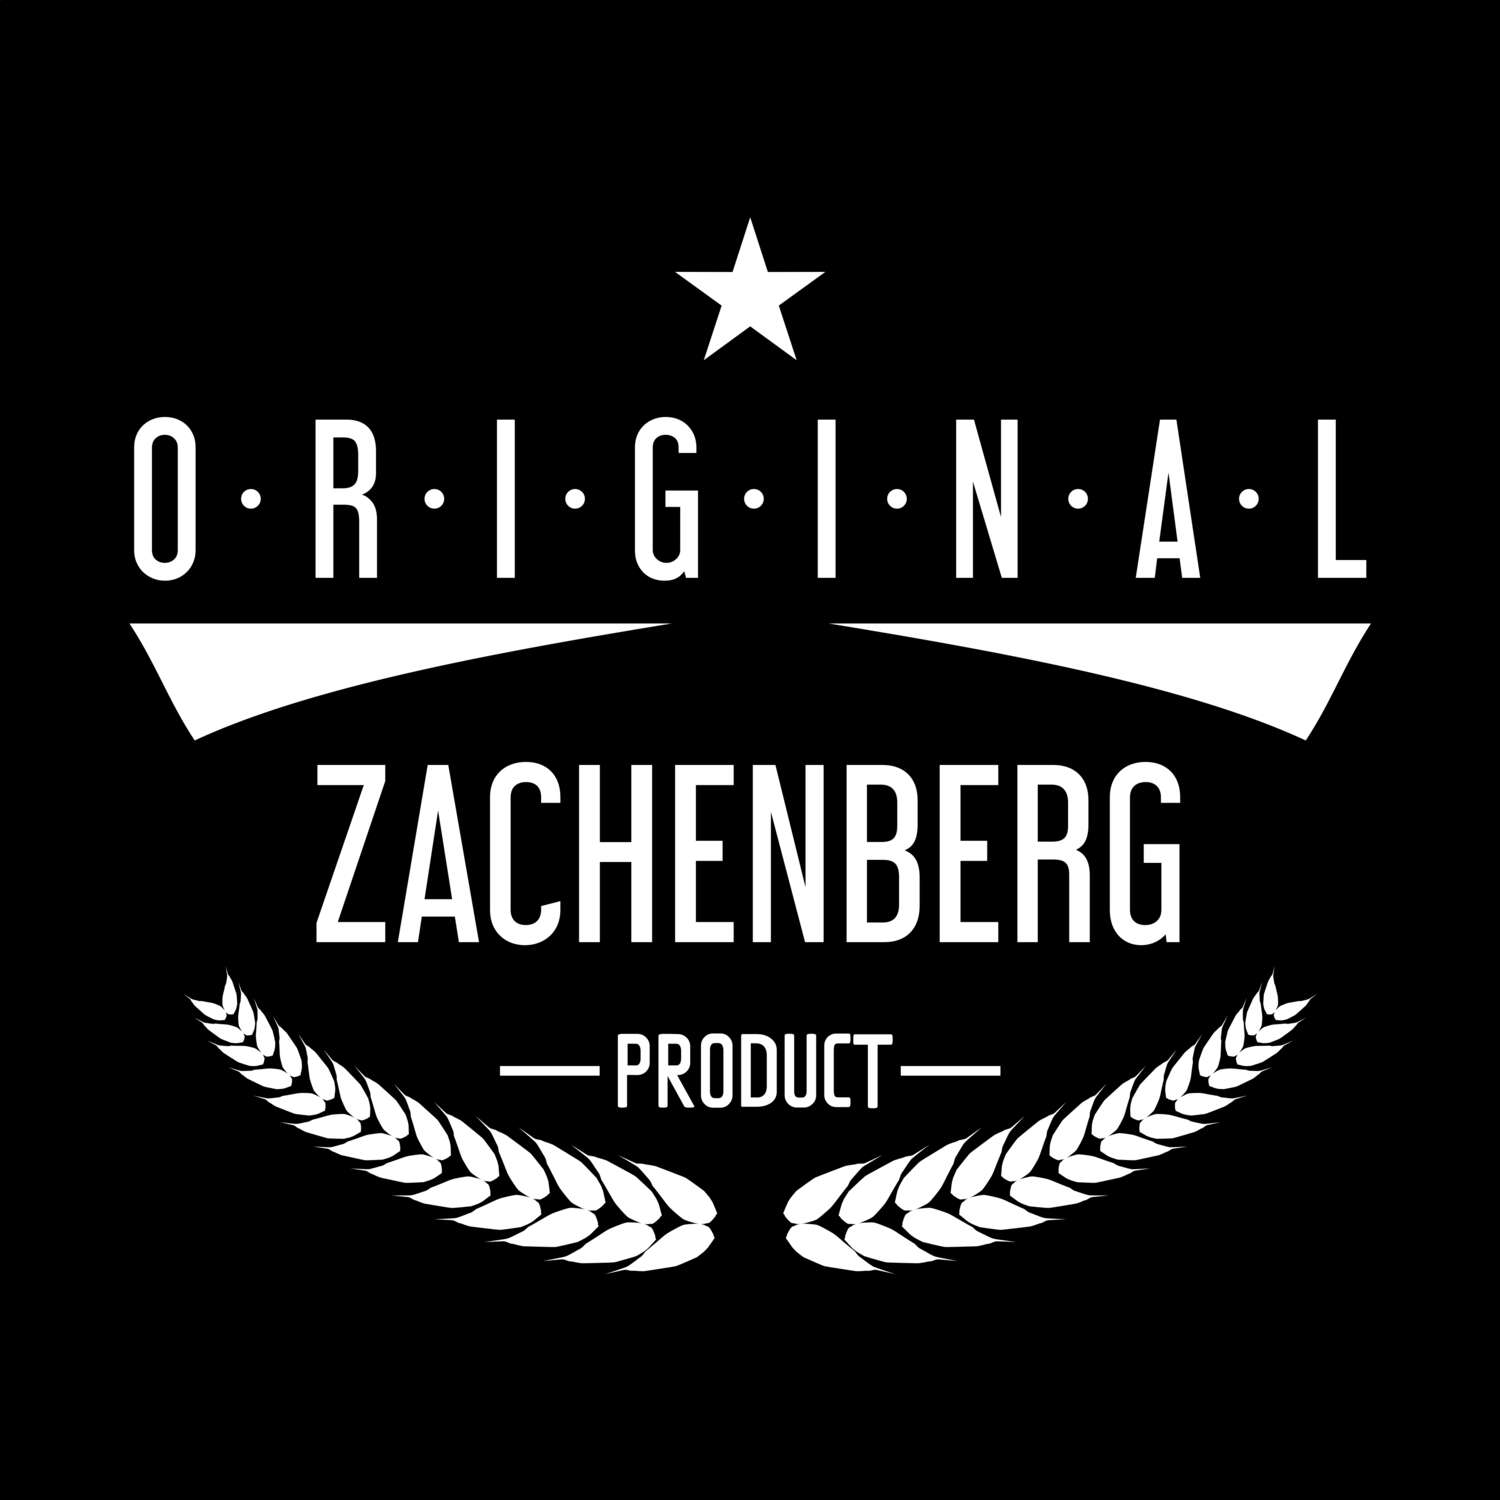 Zachenberg T-Shirt »Original Product«